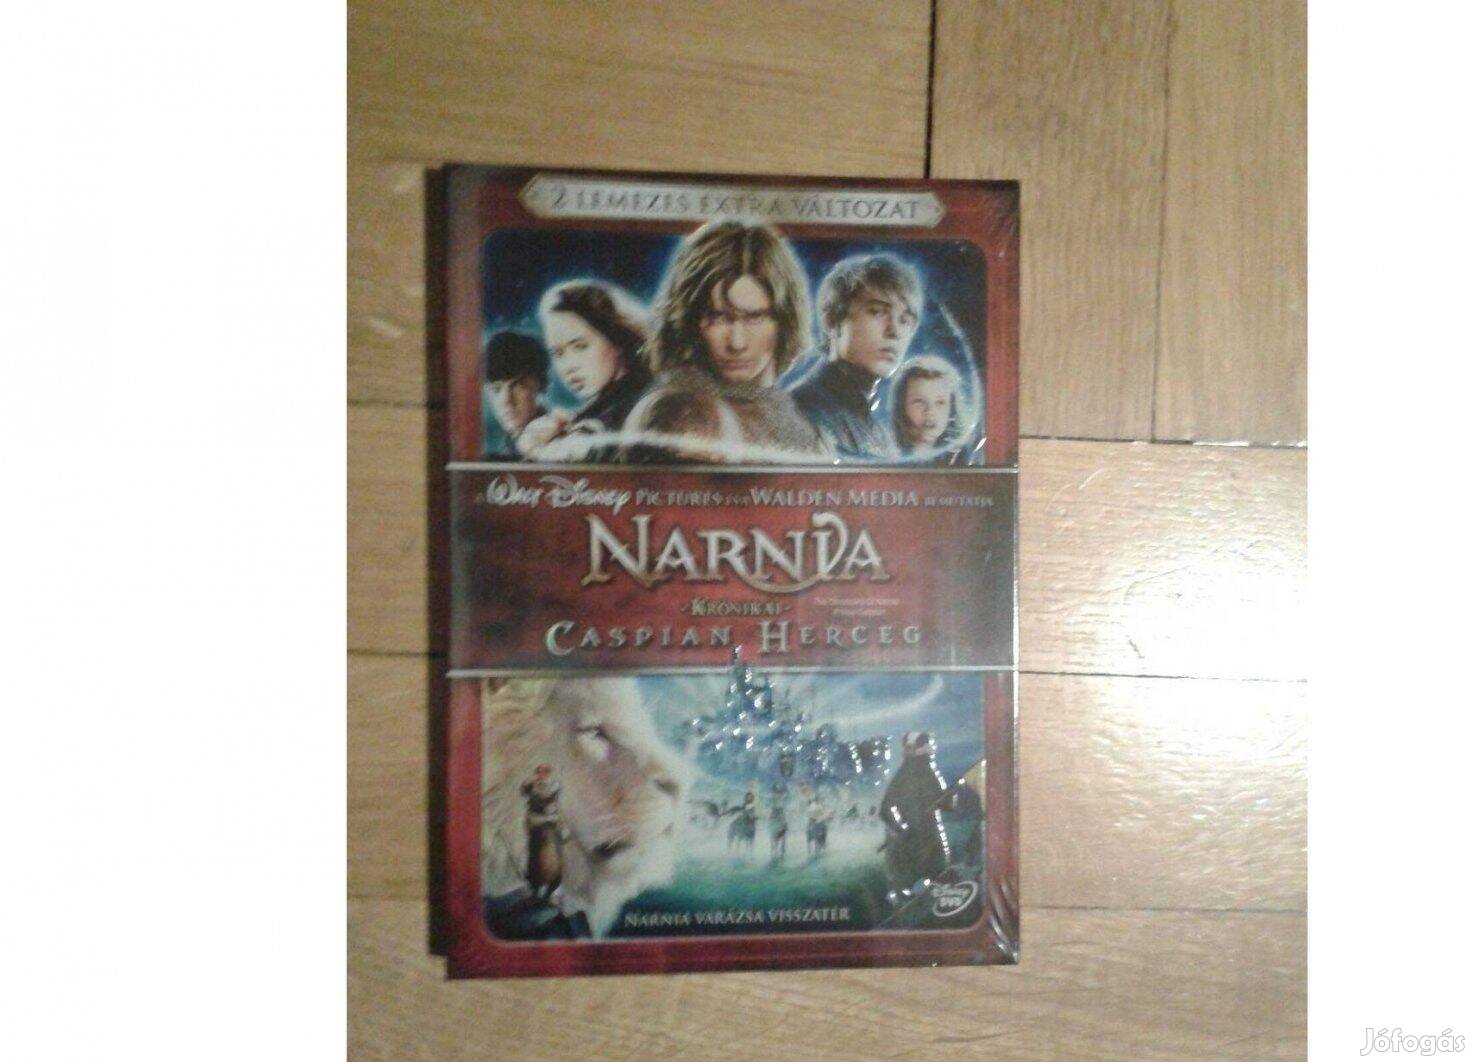 Narnia 2 lemezes extra változat, DVD